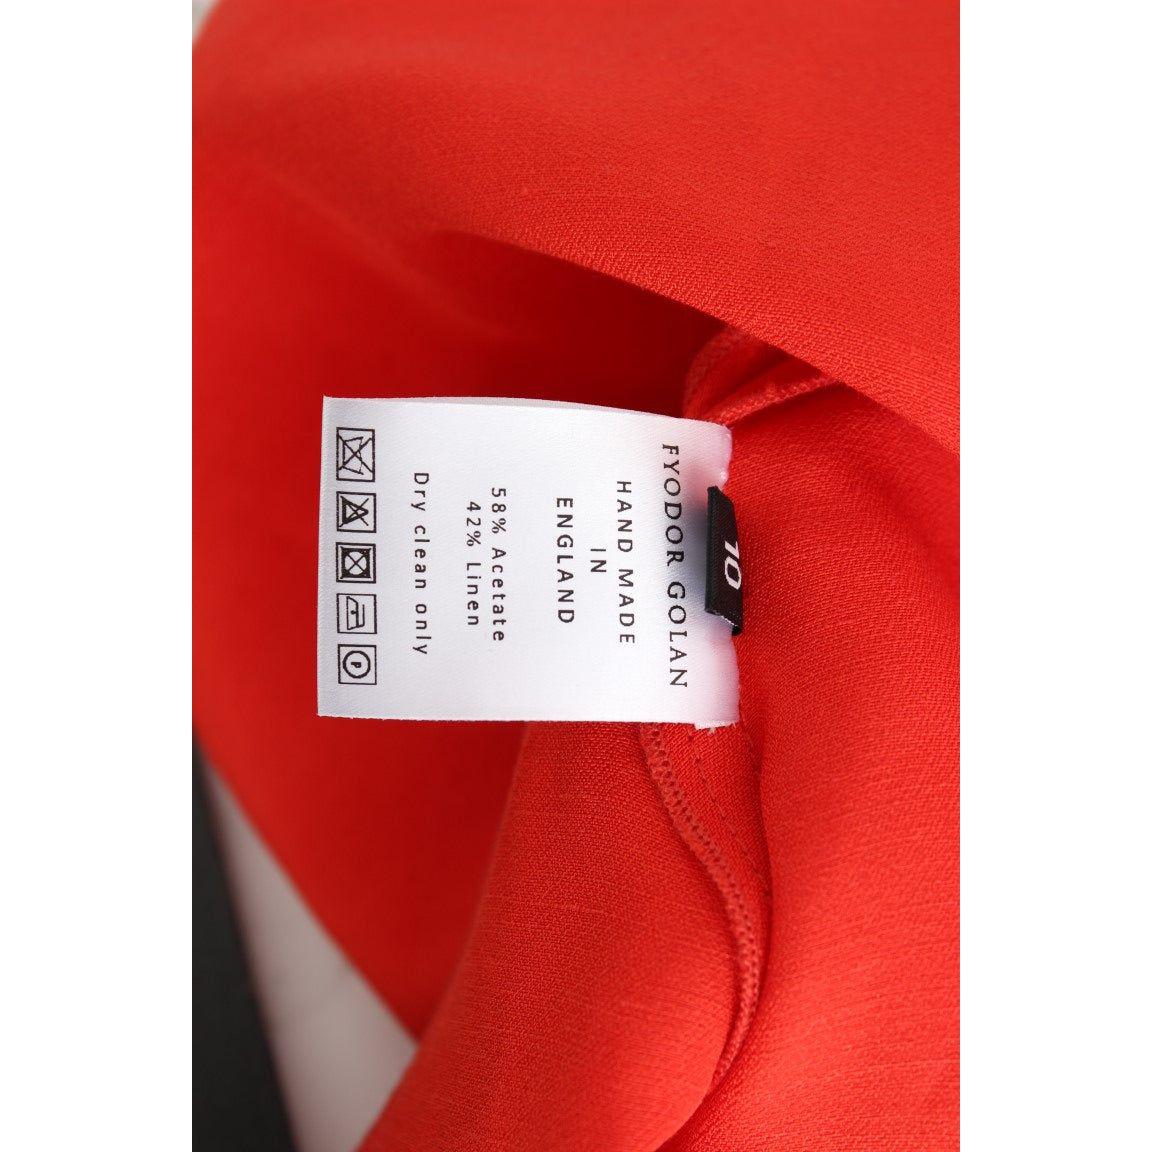 Fyodor Golan Radiant Red Linen Blend Artisan Dress red-mini-linen-3-4-sleeve-sheath-dress 185328-red-mini-linen-34-sleeve-sheath-dress-7.jpg